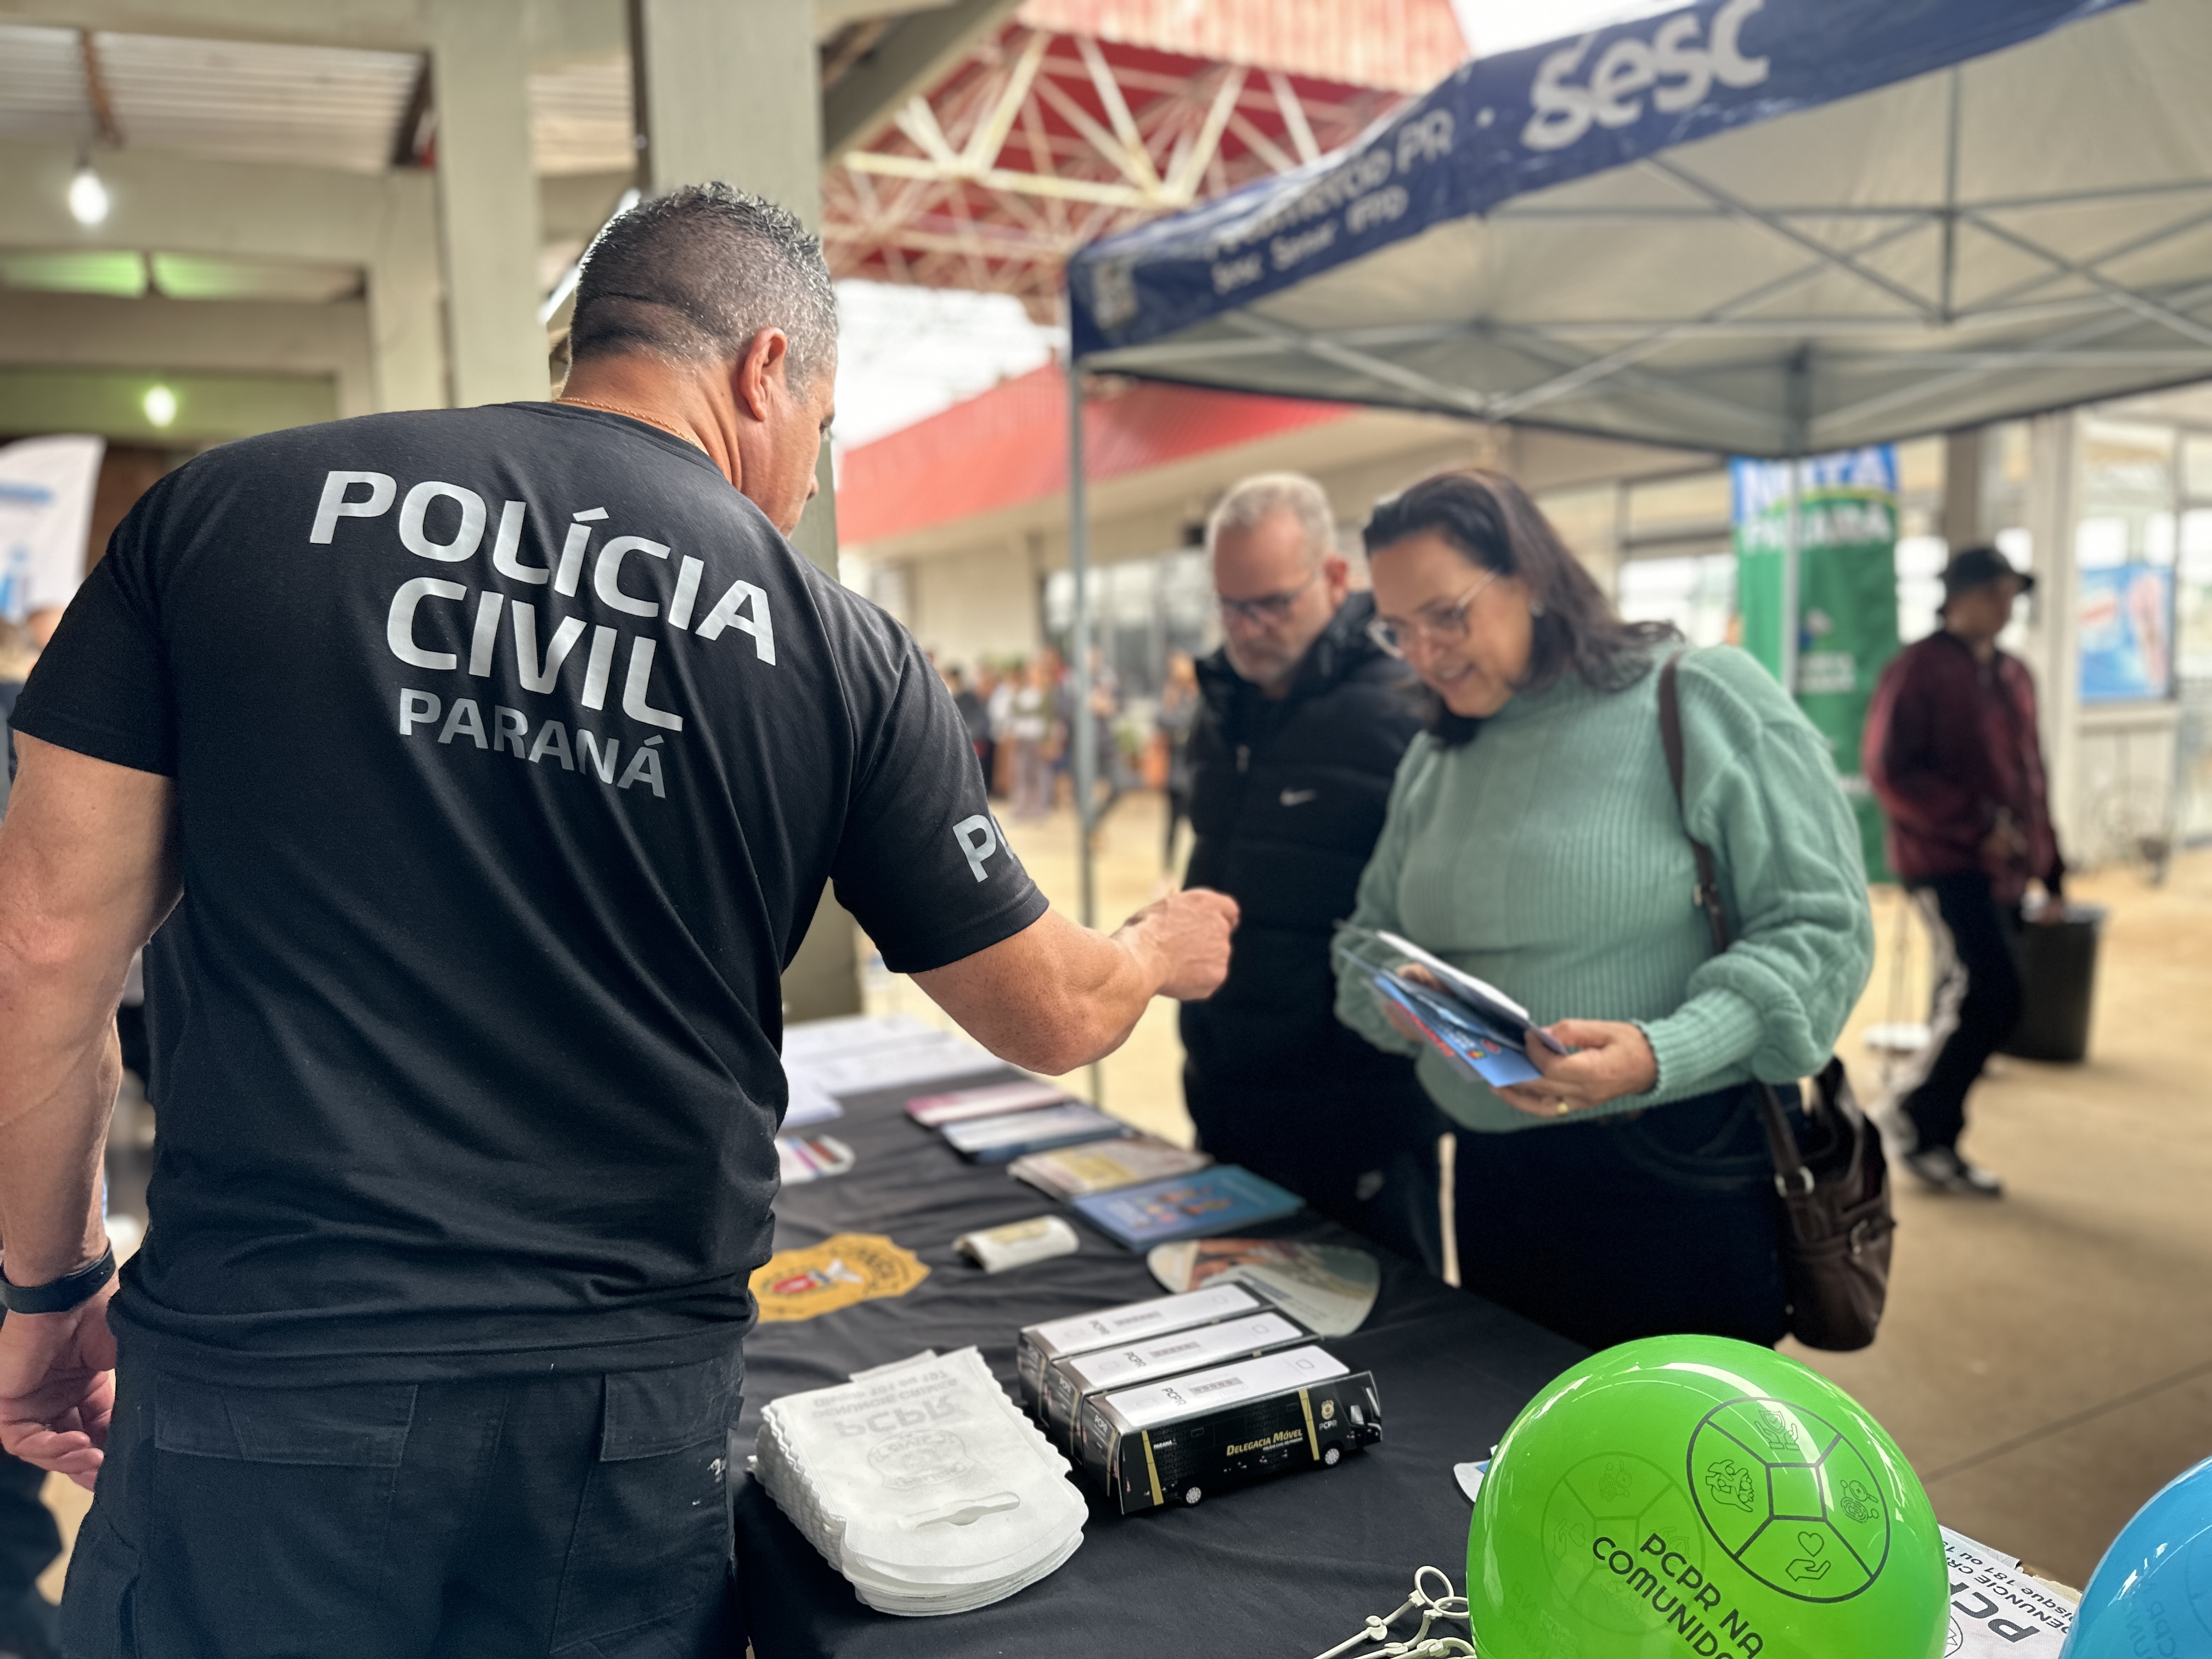 A Polícia Civil do Paraná (PCPR) levará serviços de polícia judiciária para a população de Castro, nos Campos Gerais, e Douradina, no Noroeste do Estado, durante esta semana